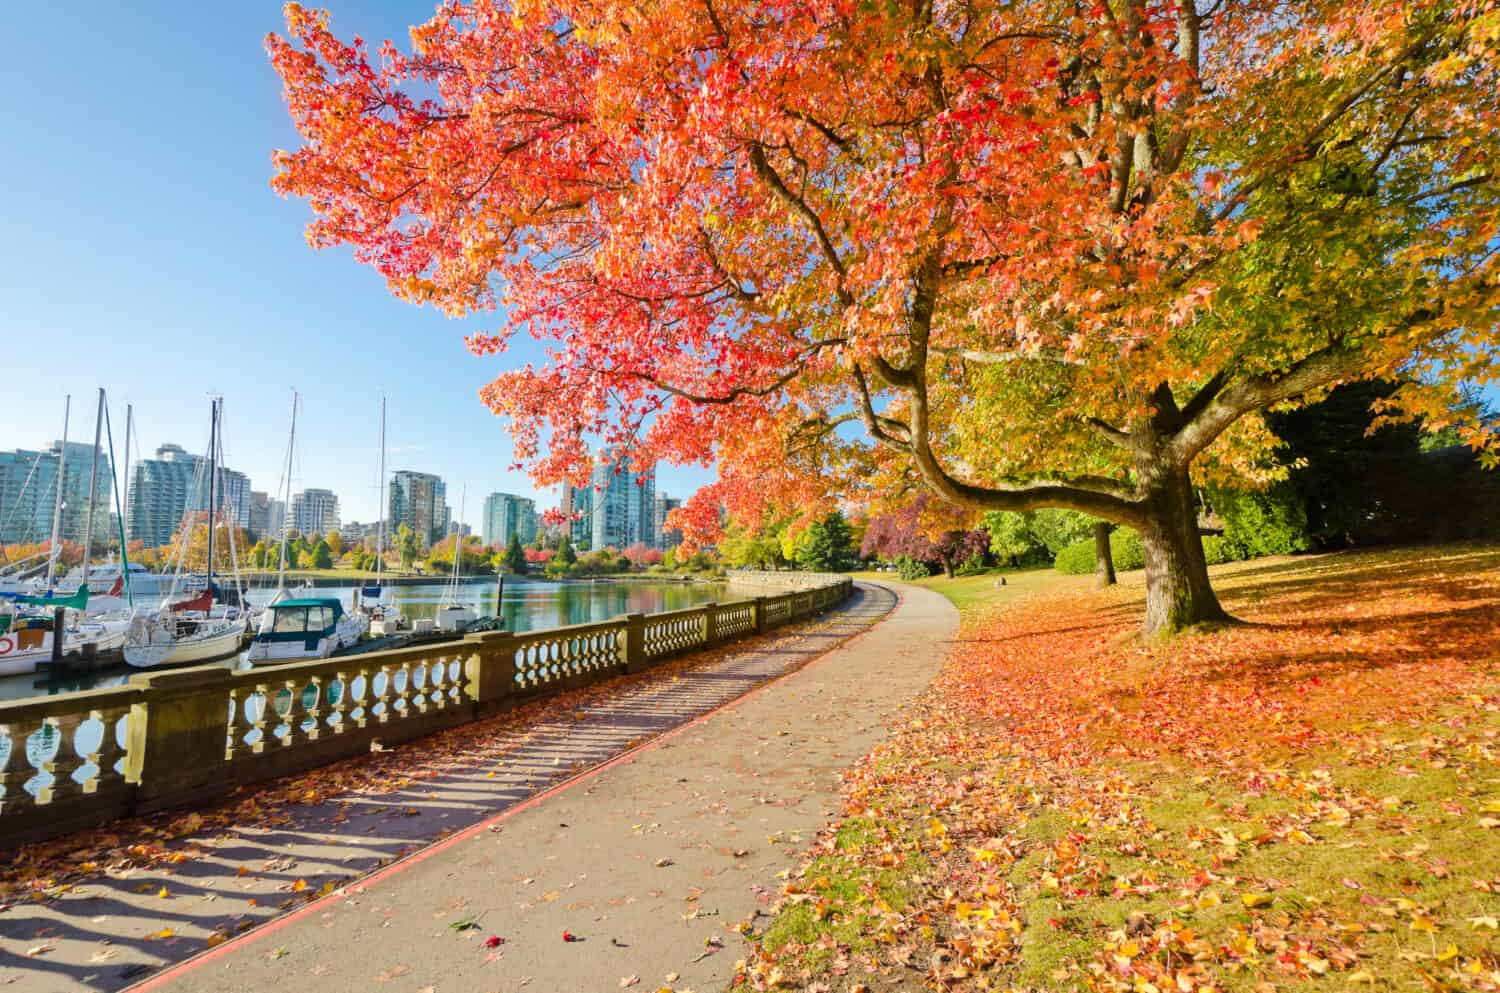 I colori dell'autunno.  Splendida passeggiata sul mare nel parco.  Stanley Park a Vancouver.  Canada.